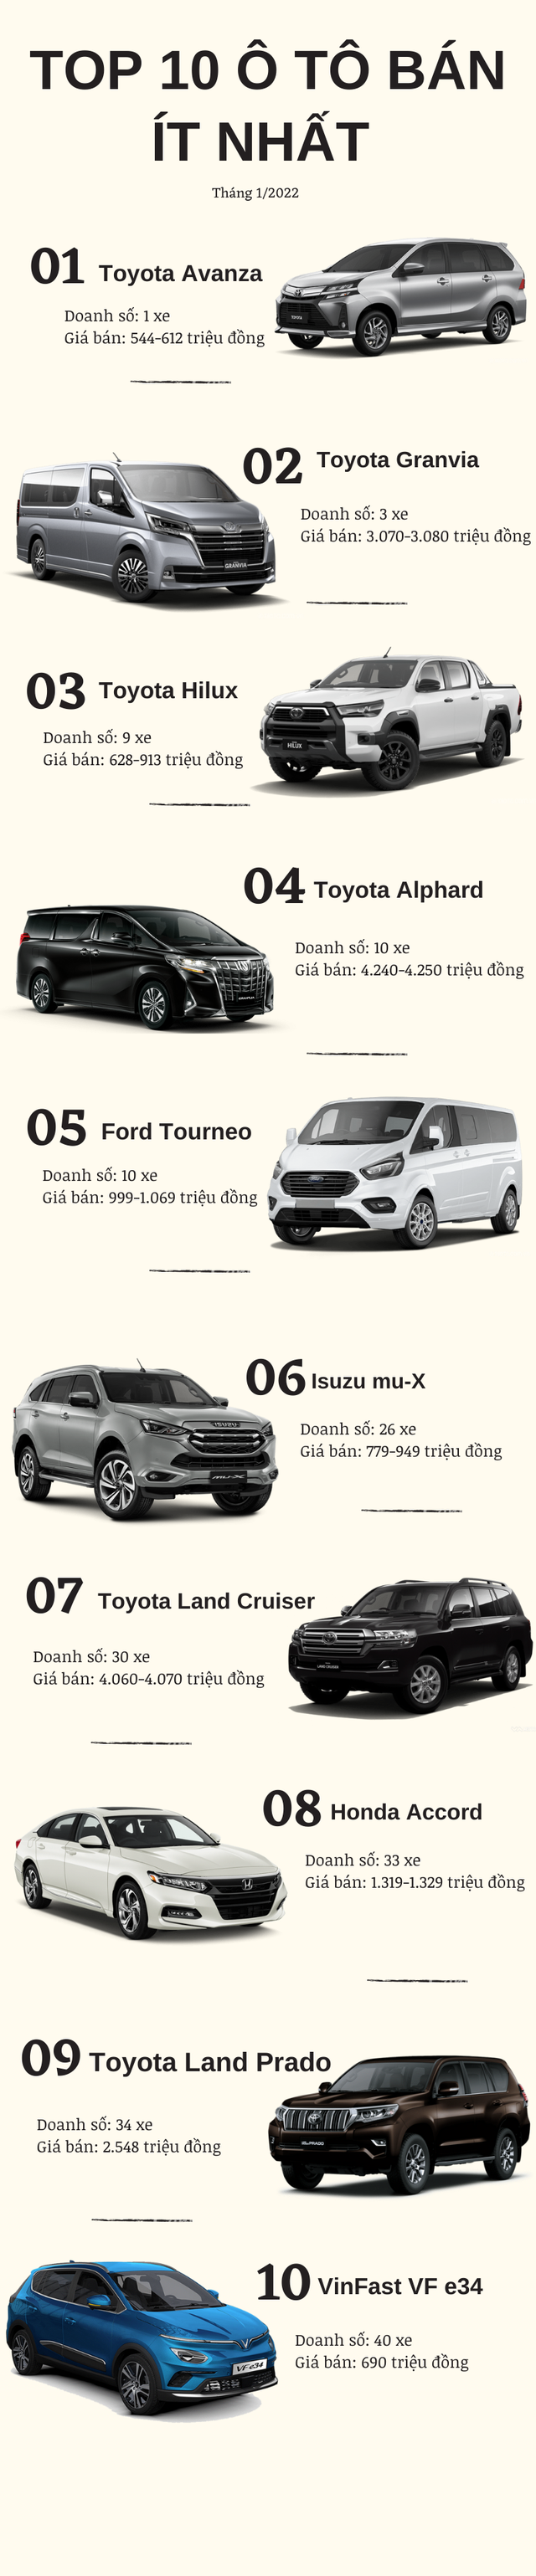 10 ô tô bán ít nhất Việt Nam tháng 1/2022: Toyota chiếm đa số, VinFast VF e34 - Ảnh 1.